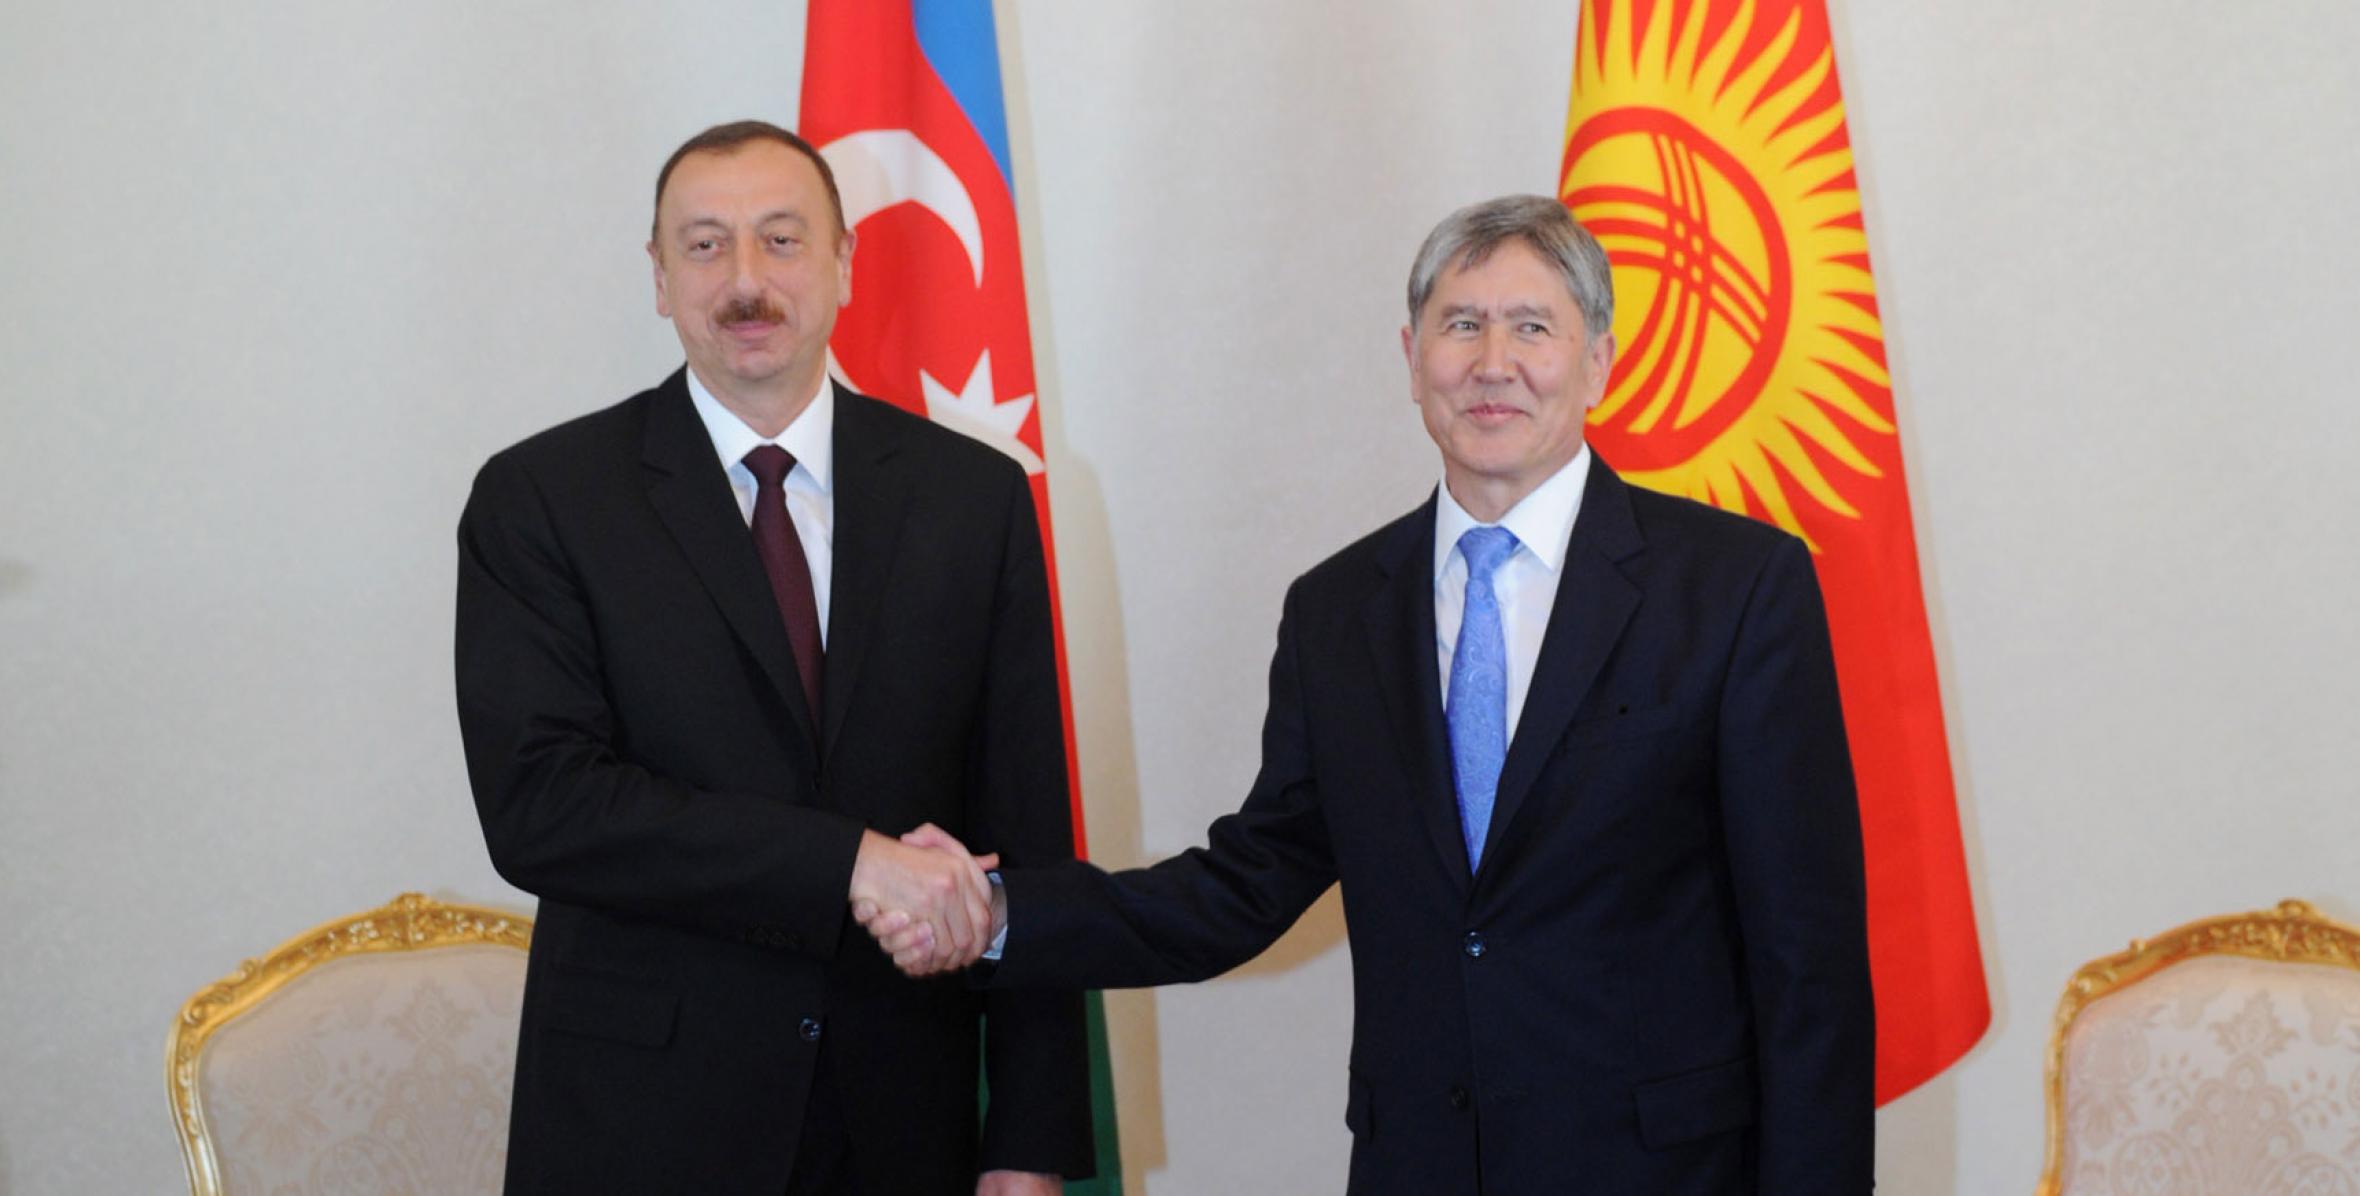 Ильхам Алиев встретился в Москве с главой Кыргызского государства Алмазбеком Атамбаевым